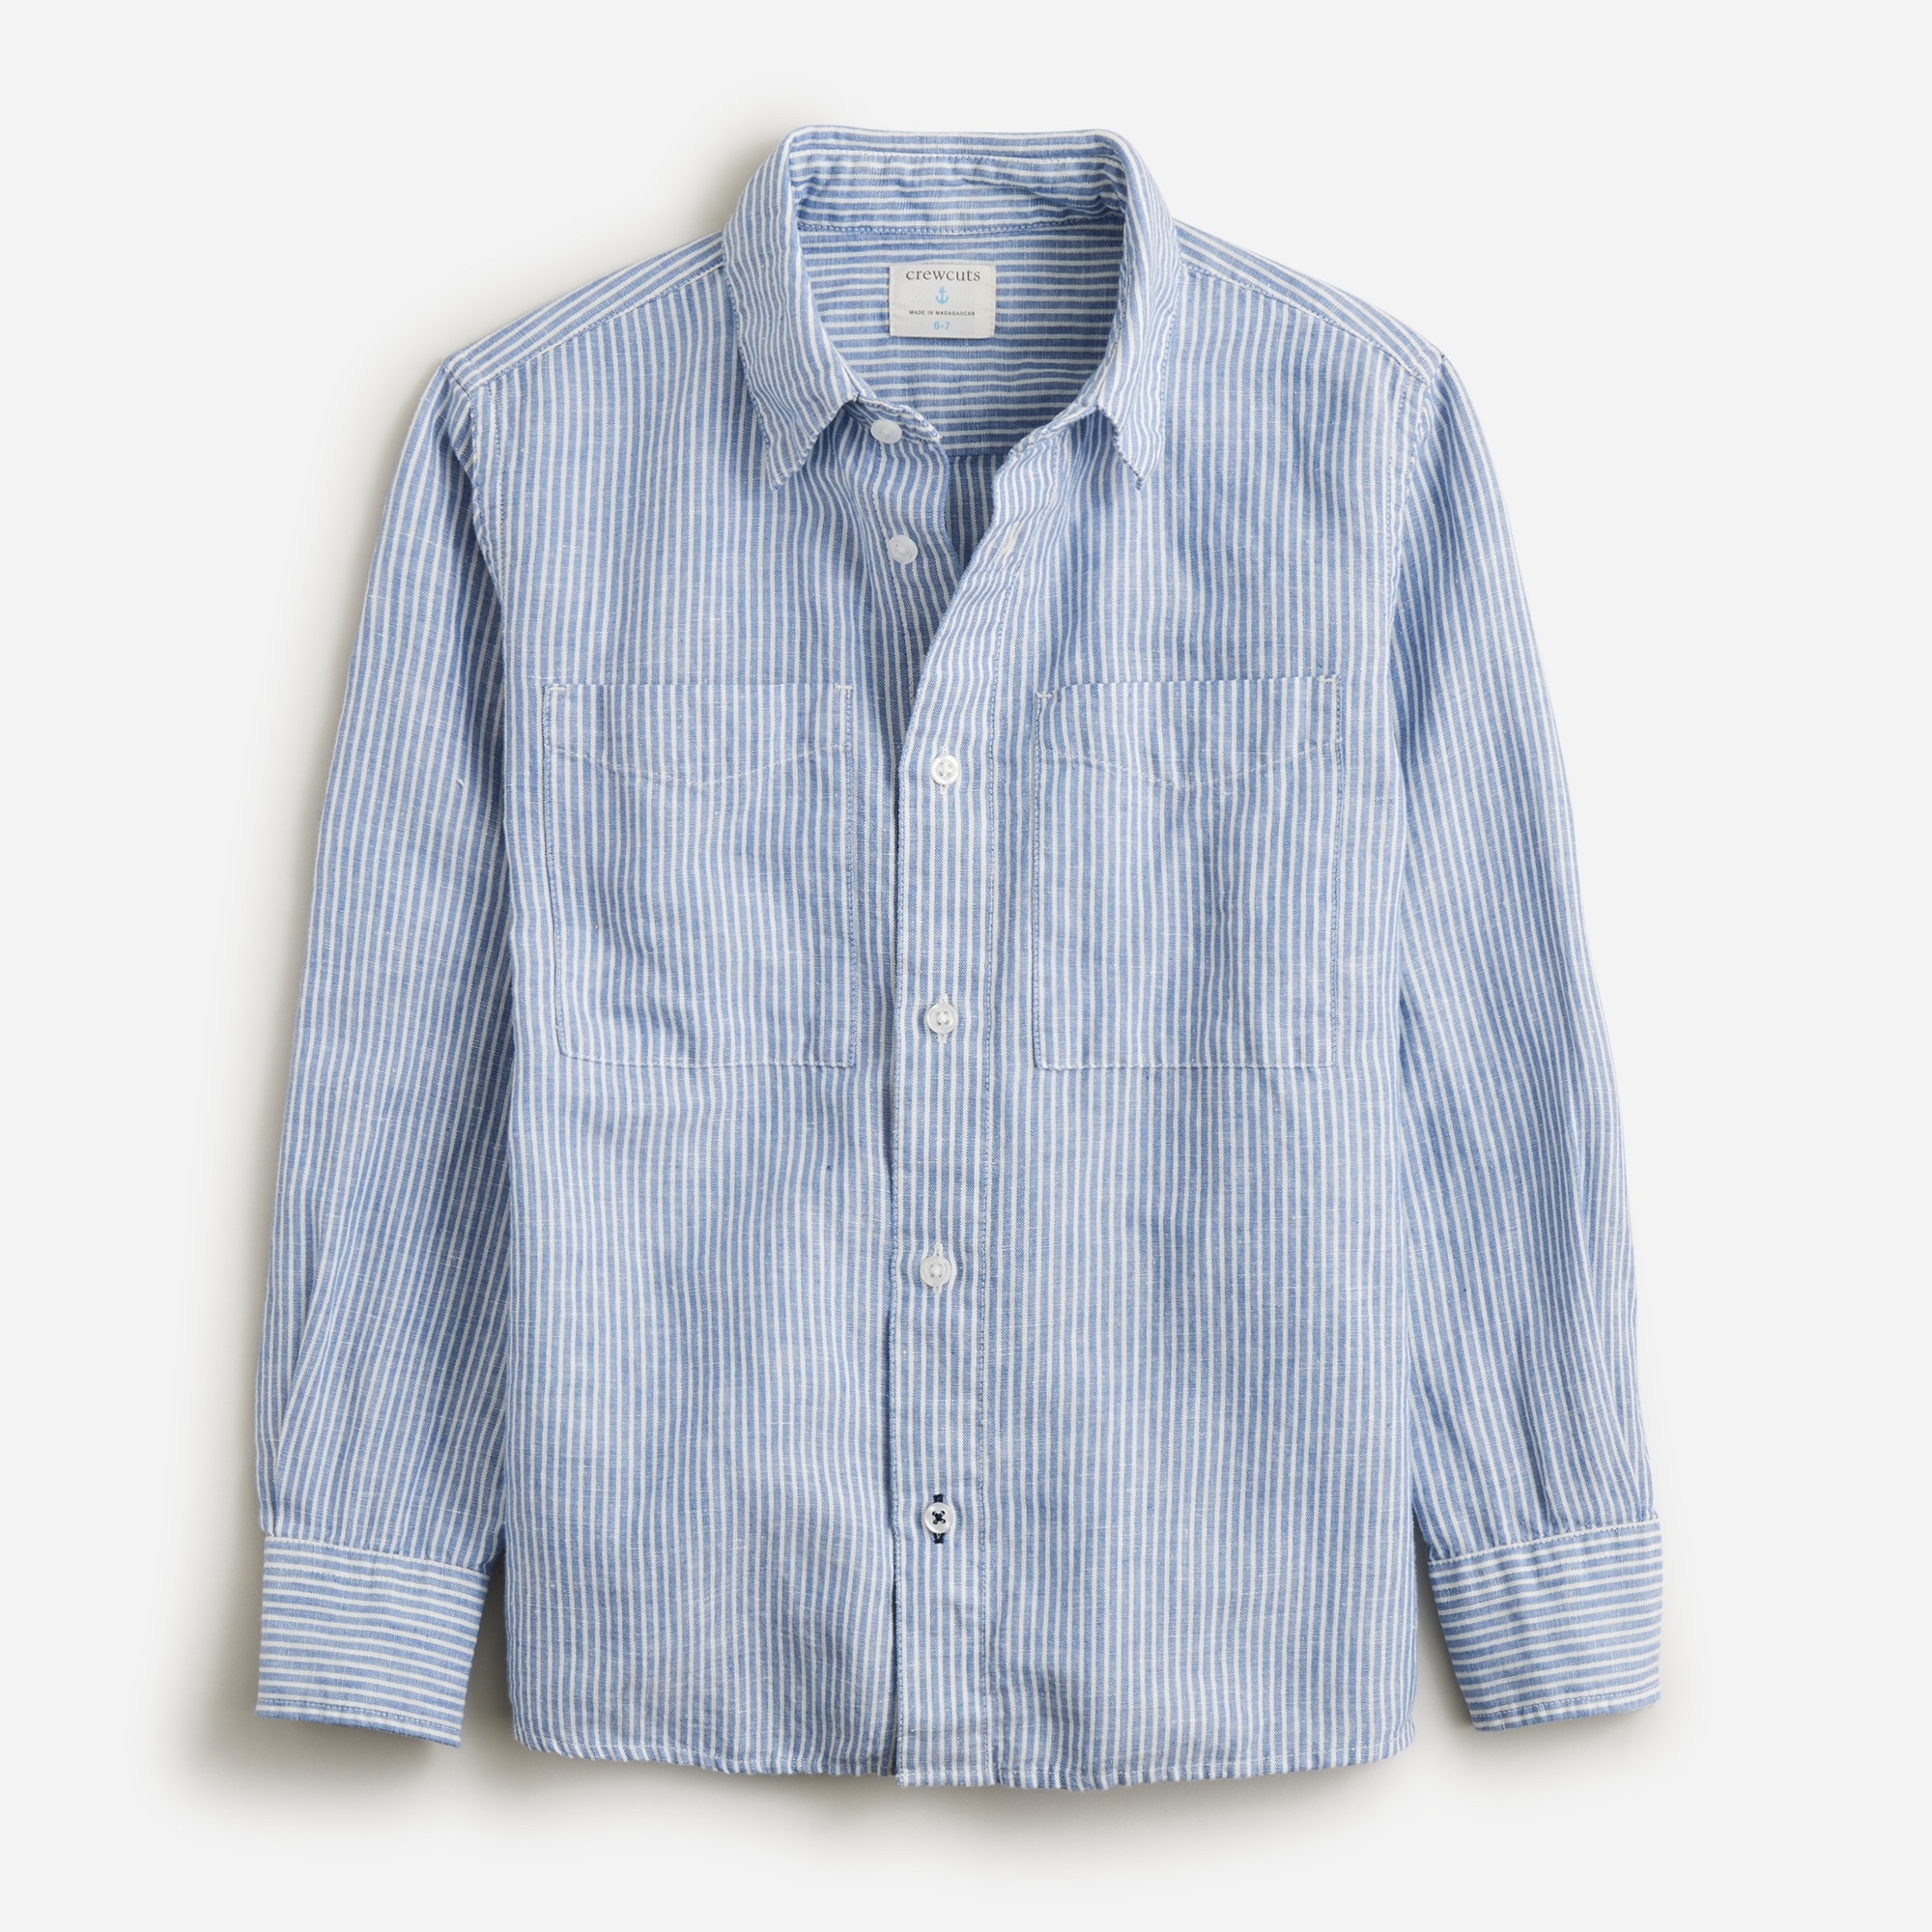 Jcrew Boys long-sleeve camp shirt in linen-cotton blend